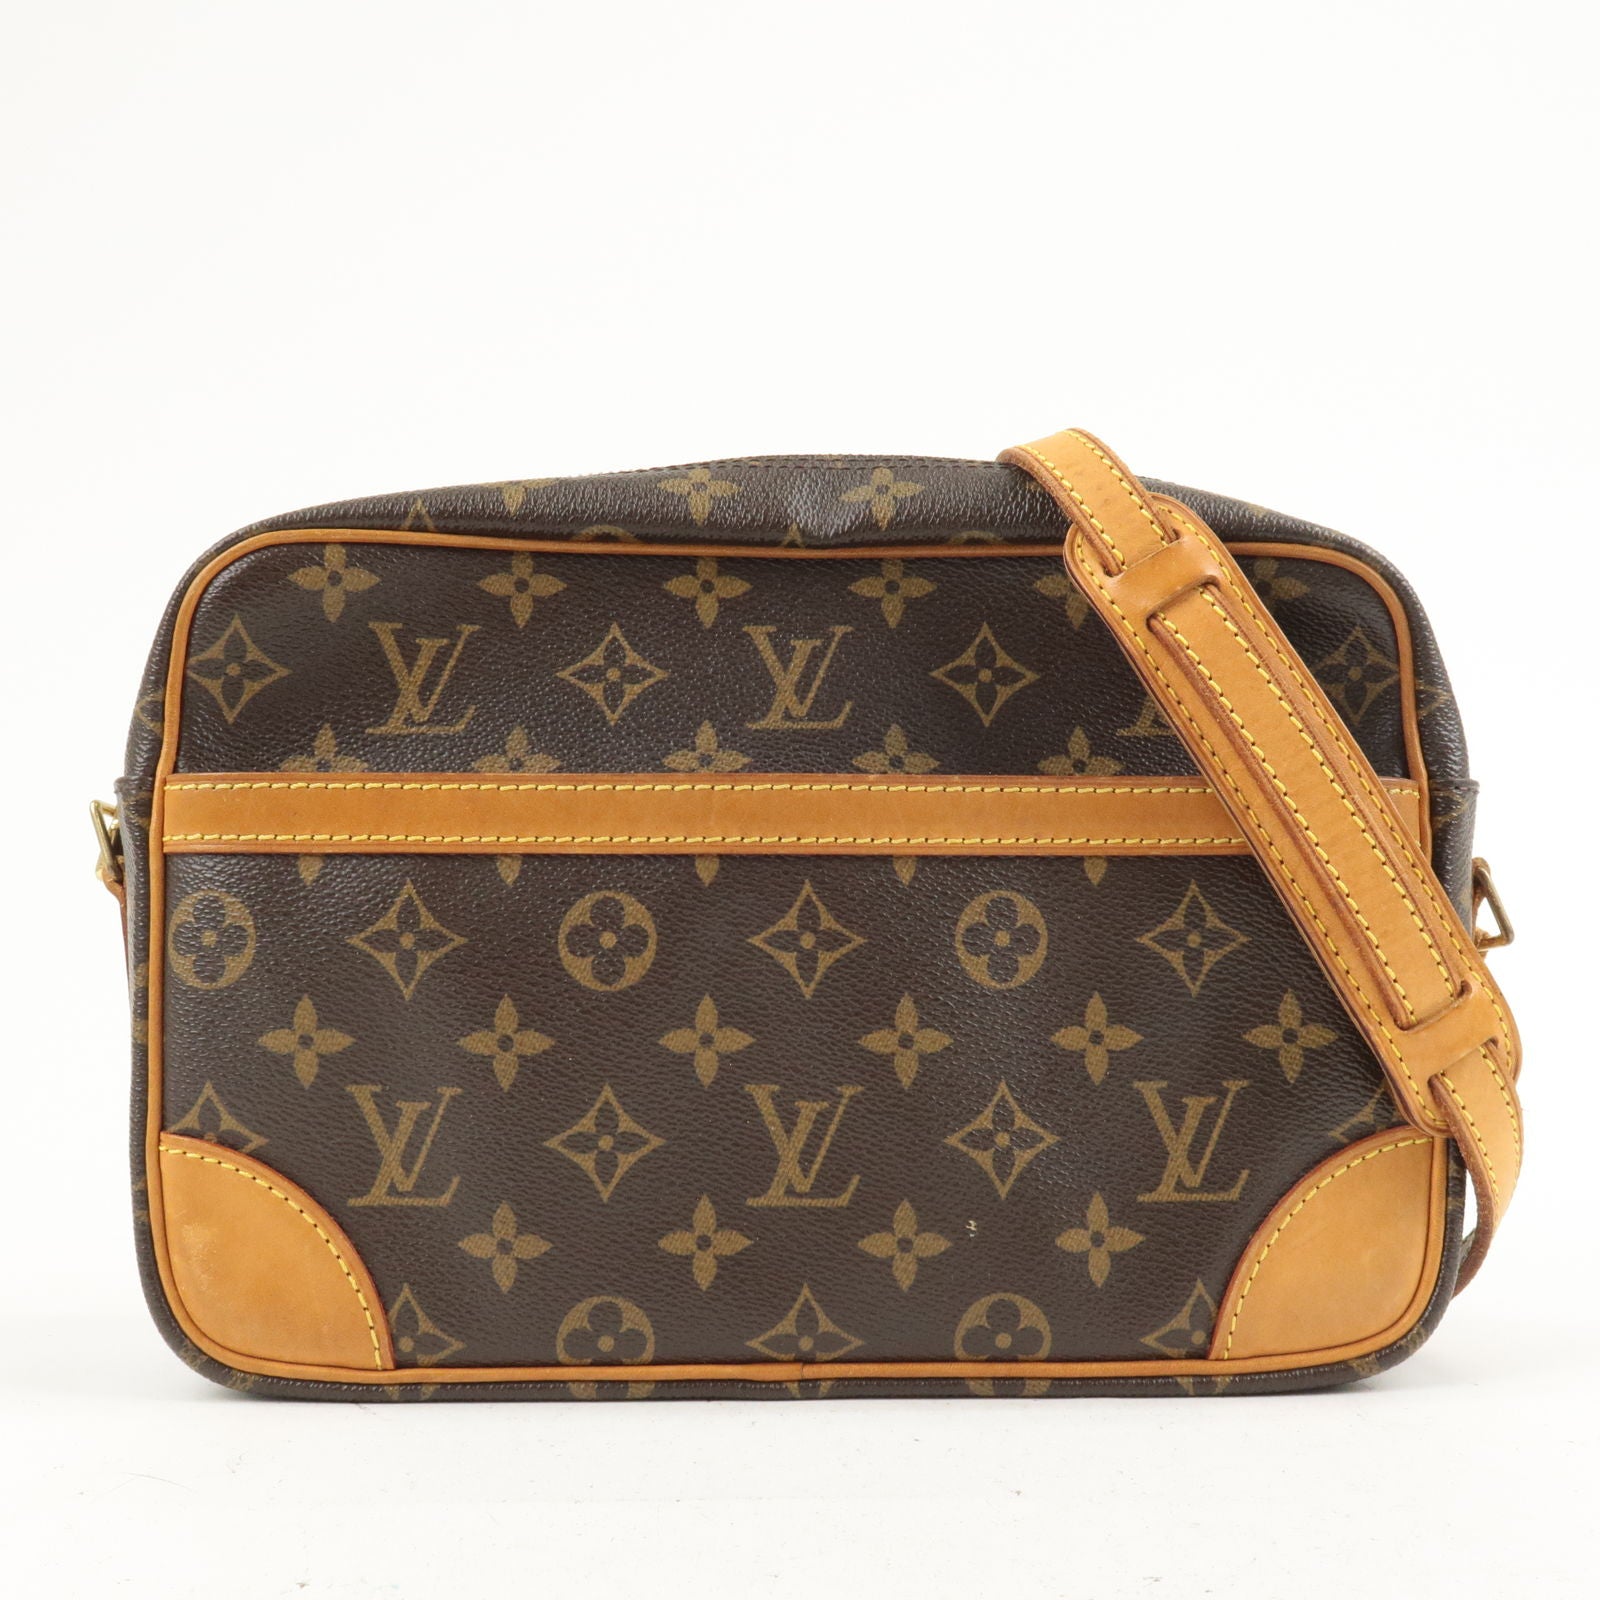 Shop for Louis Vuitton Monogram Canvas Leather Trocadero 30 cm Bag